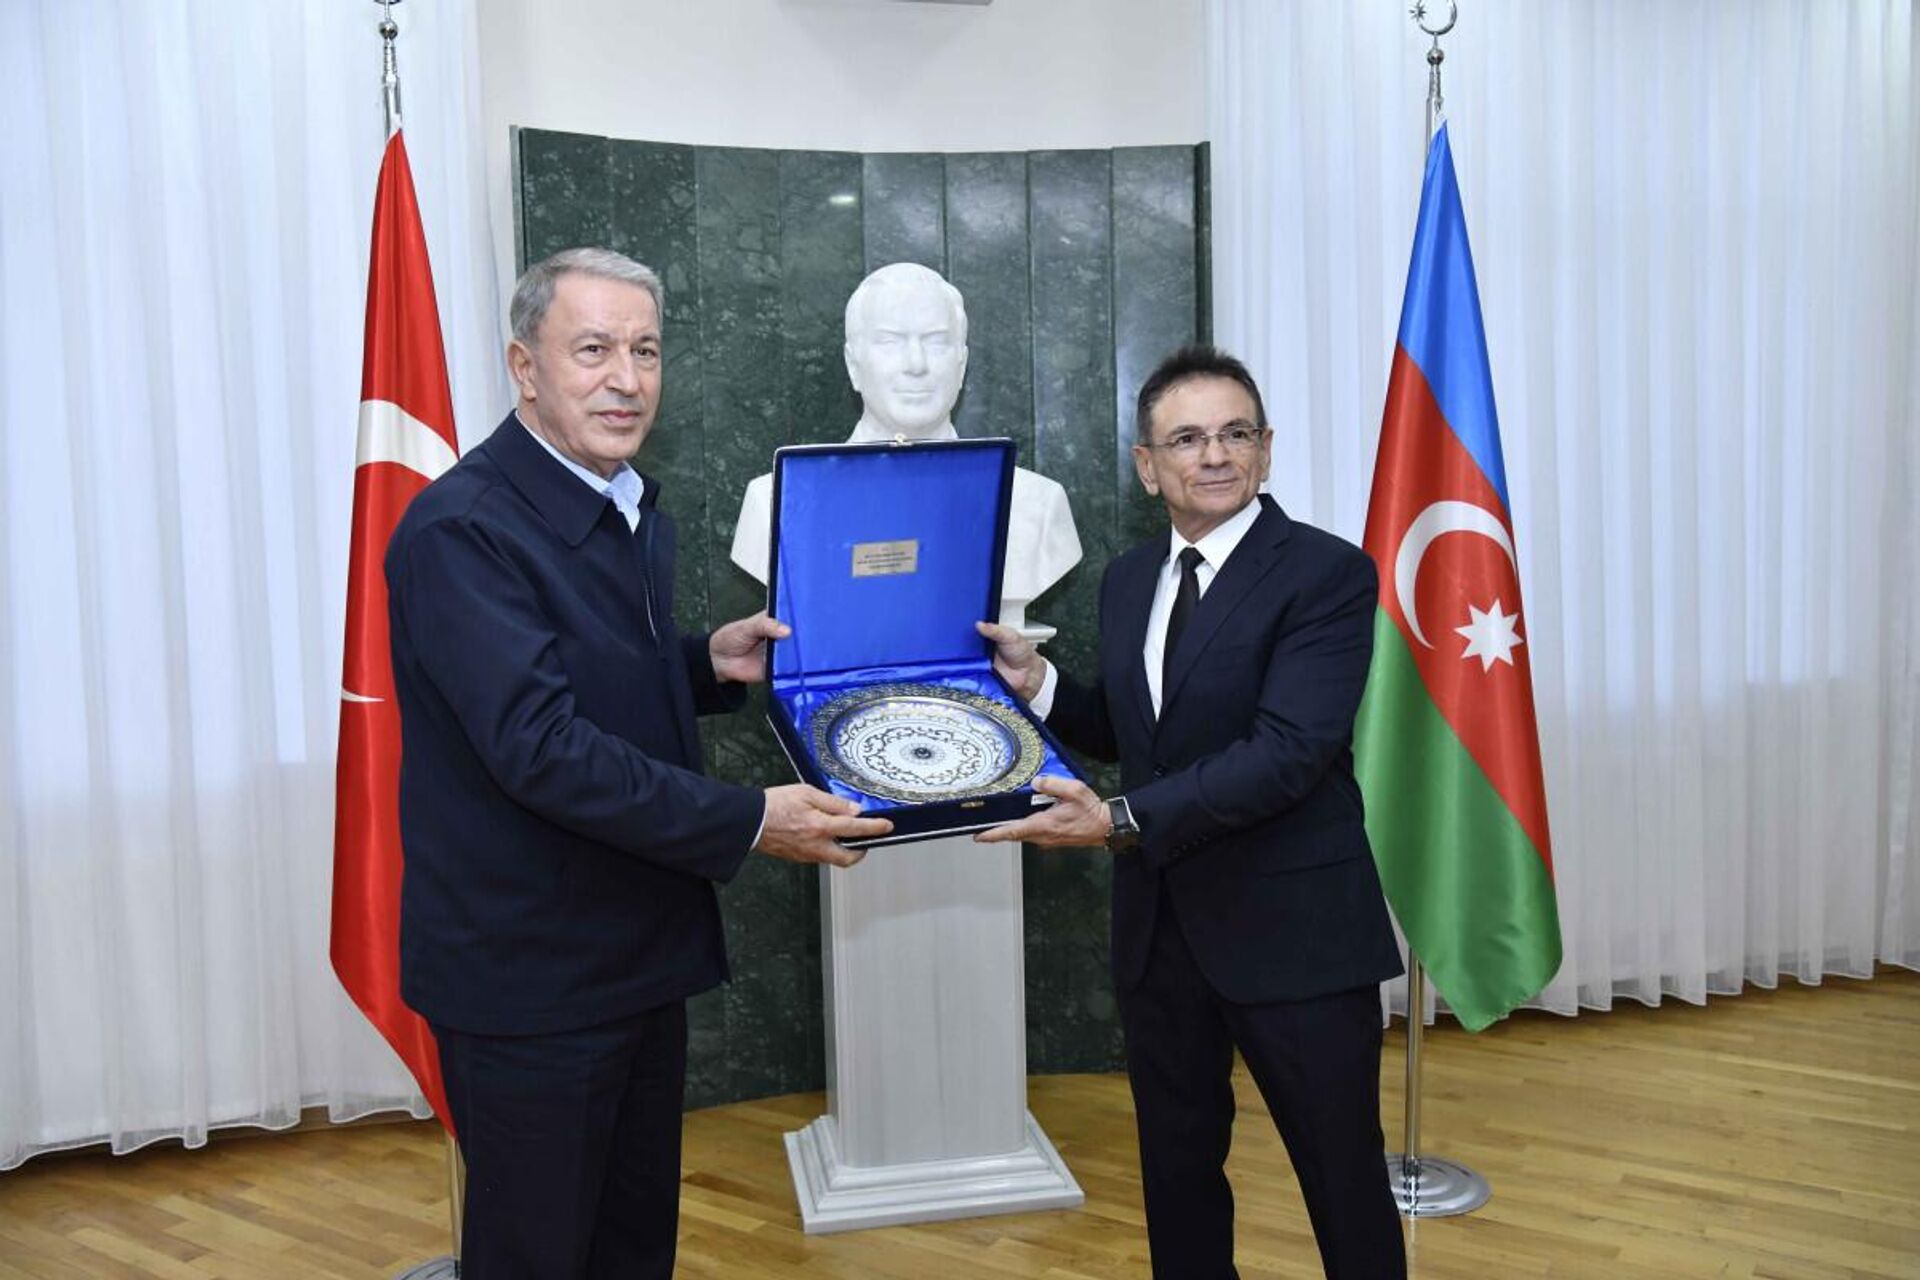 Mədət Quliyev Hulusi Akarı medalla təltif edib - Sputnik Азербайджан, 1920, 04.10.2022